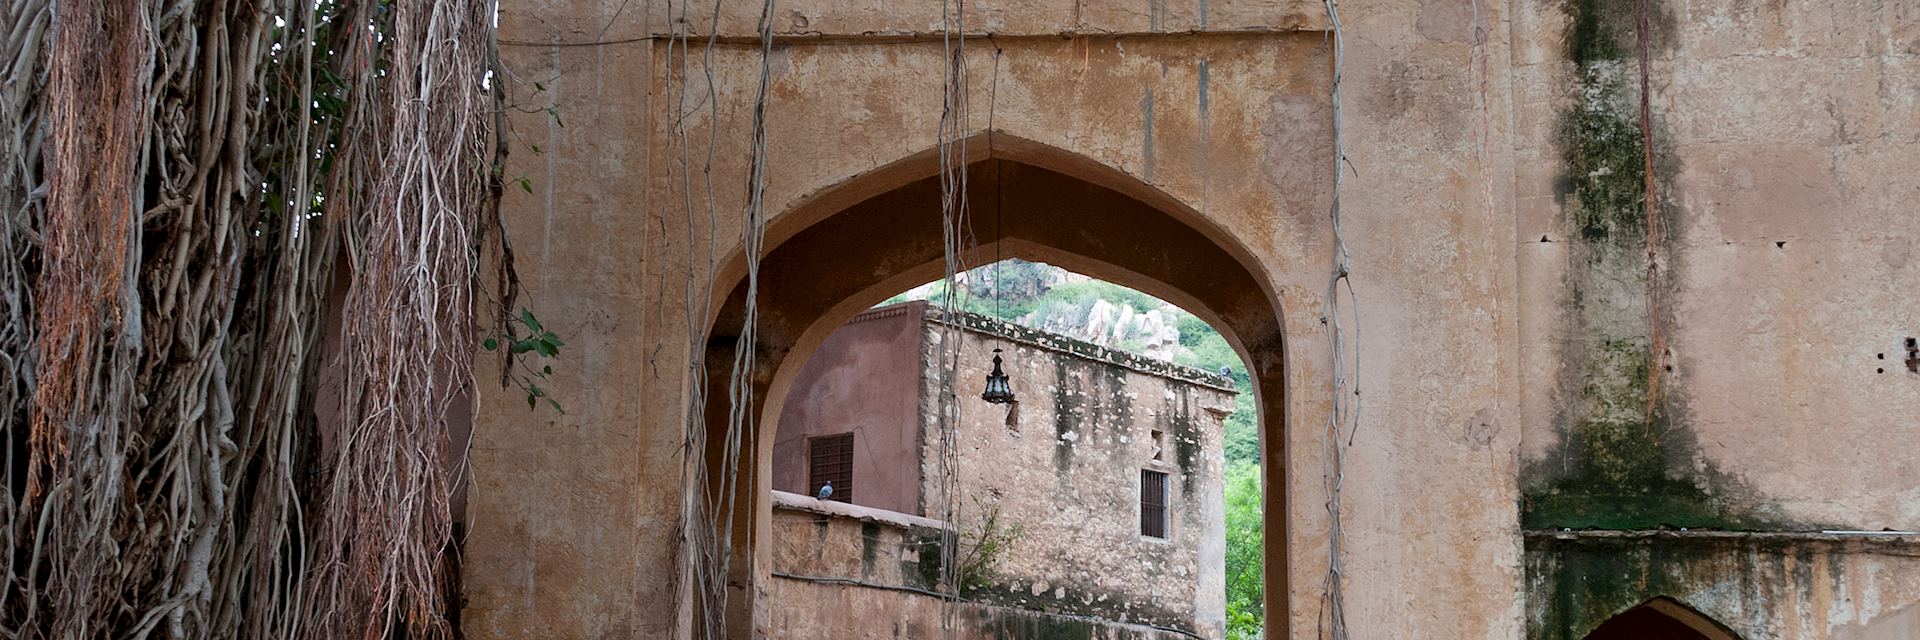 Entrance to Samode Palace